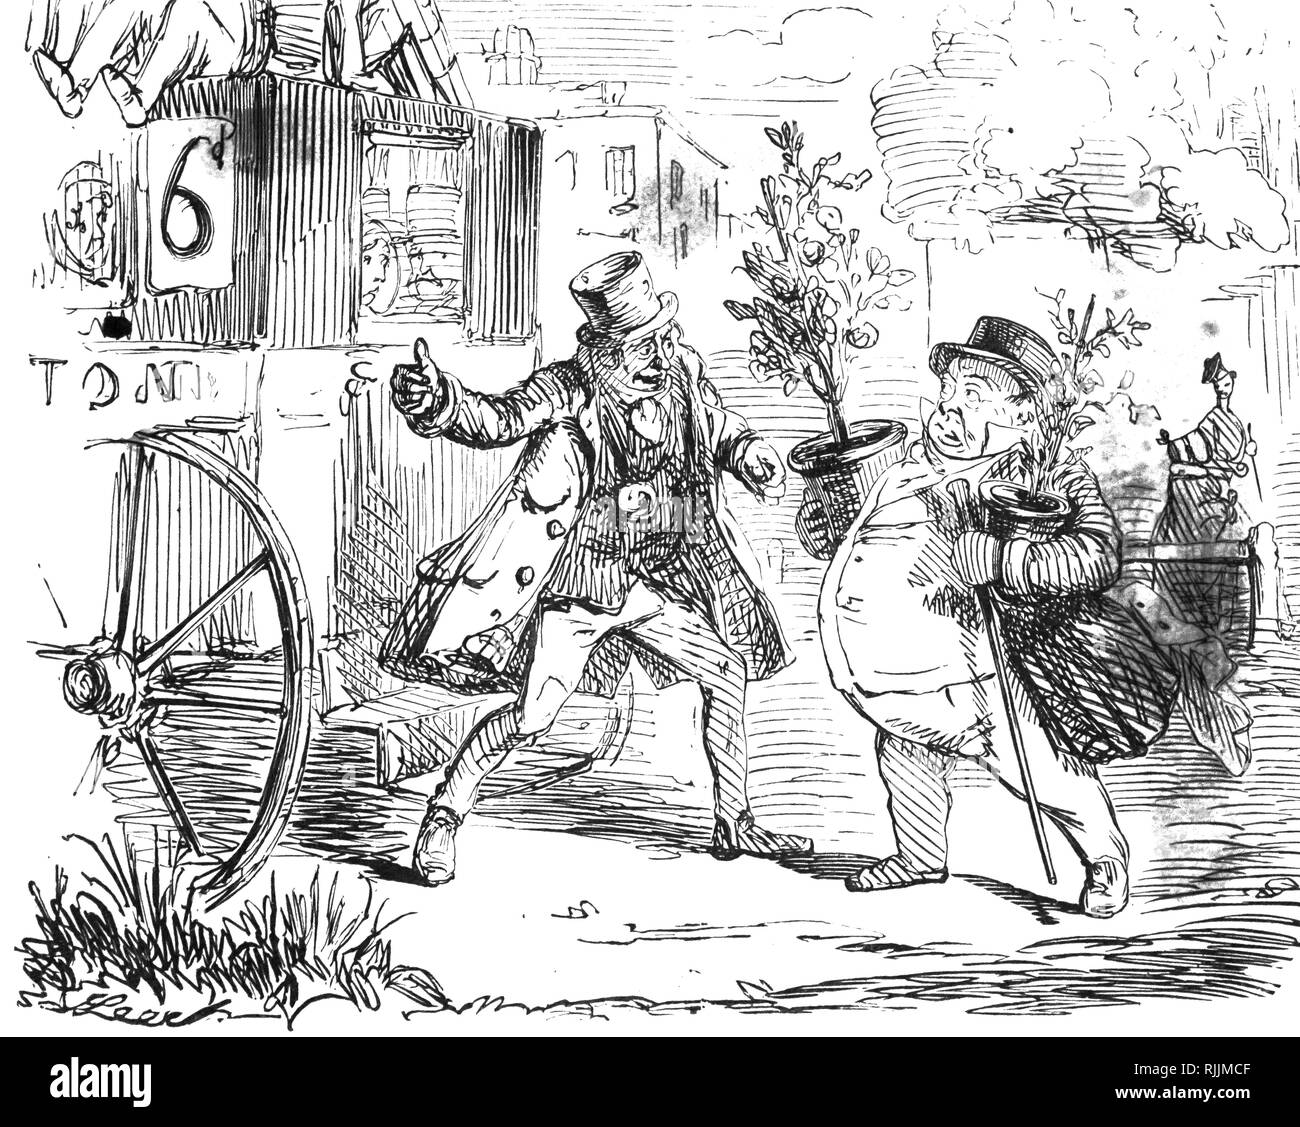 Eine Karikatur Kommentieren der Standard der von der Fahrgäste des Busses wegen der akuten Rivalität zwischen der London omnibus Unternehmen erlebt. Illustriert von John Leech (1817-1864) ein englischer Karikaturist und Illustrator. Vom 19. Jahrhundert Stockfoto